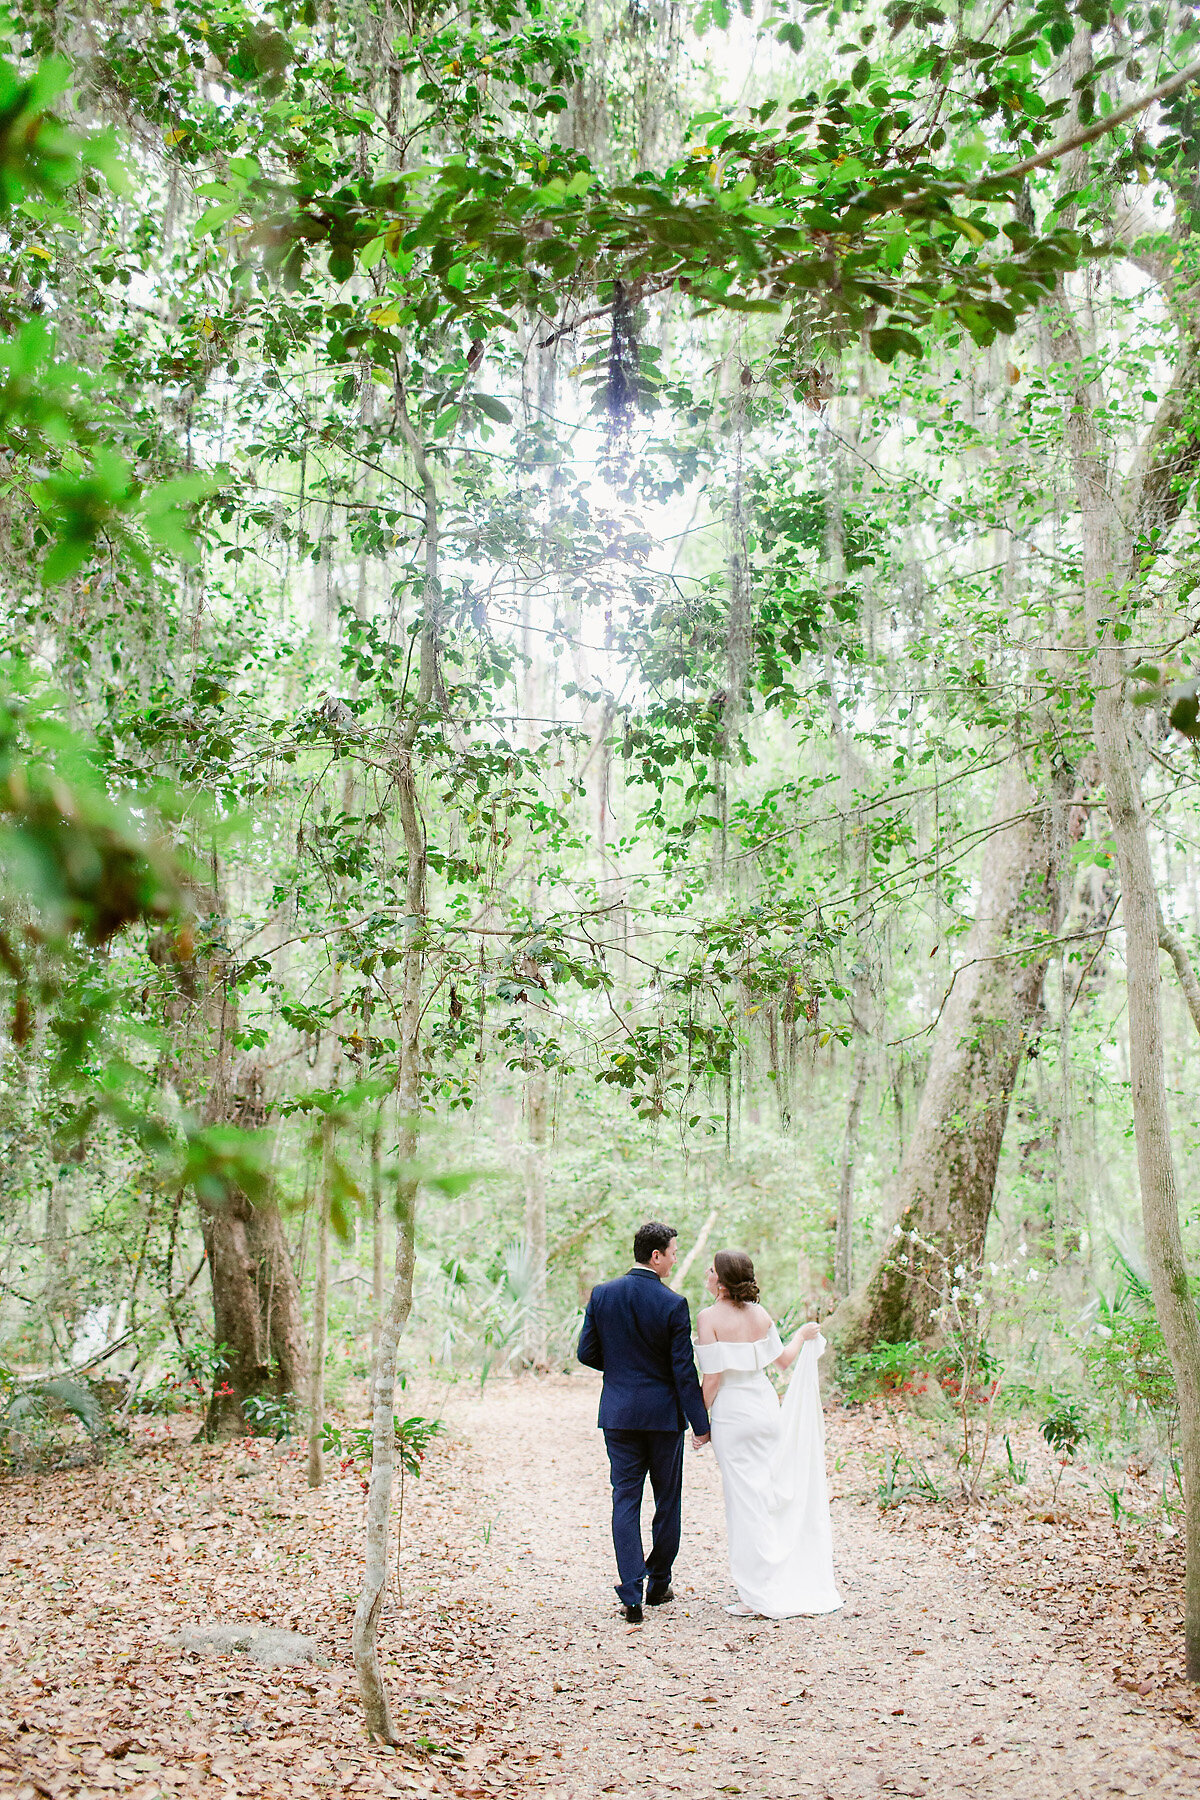 Bride and groom walking through woods.